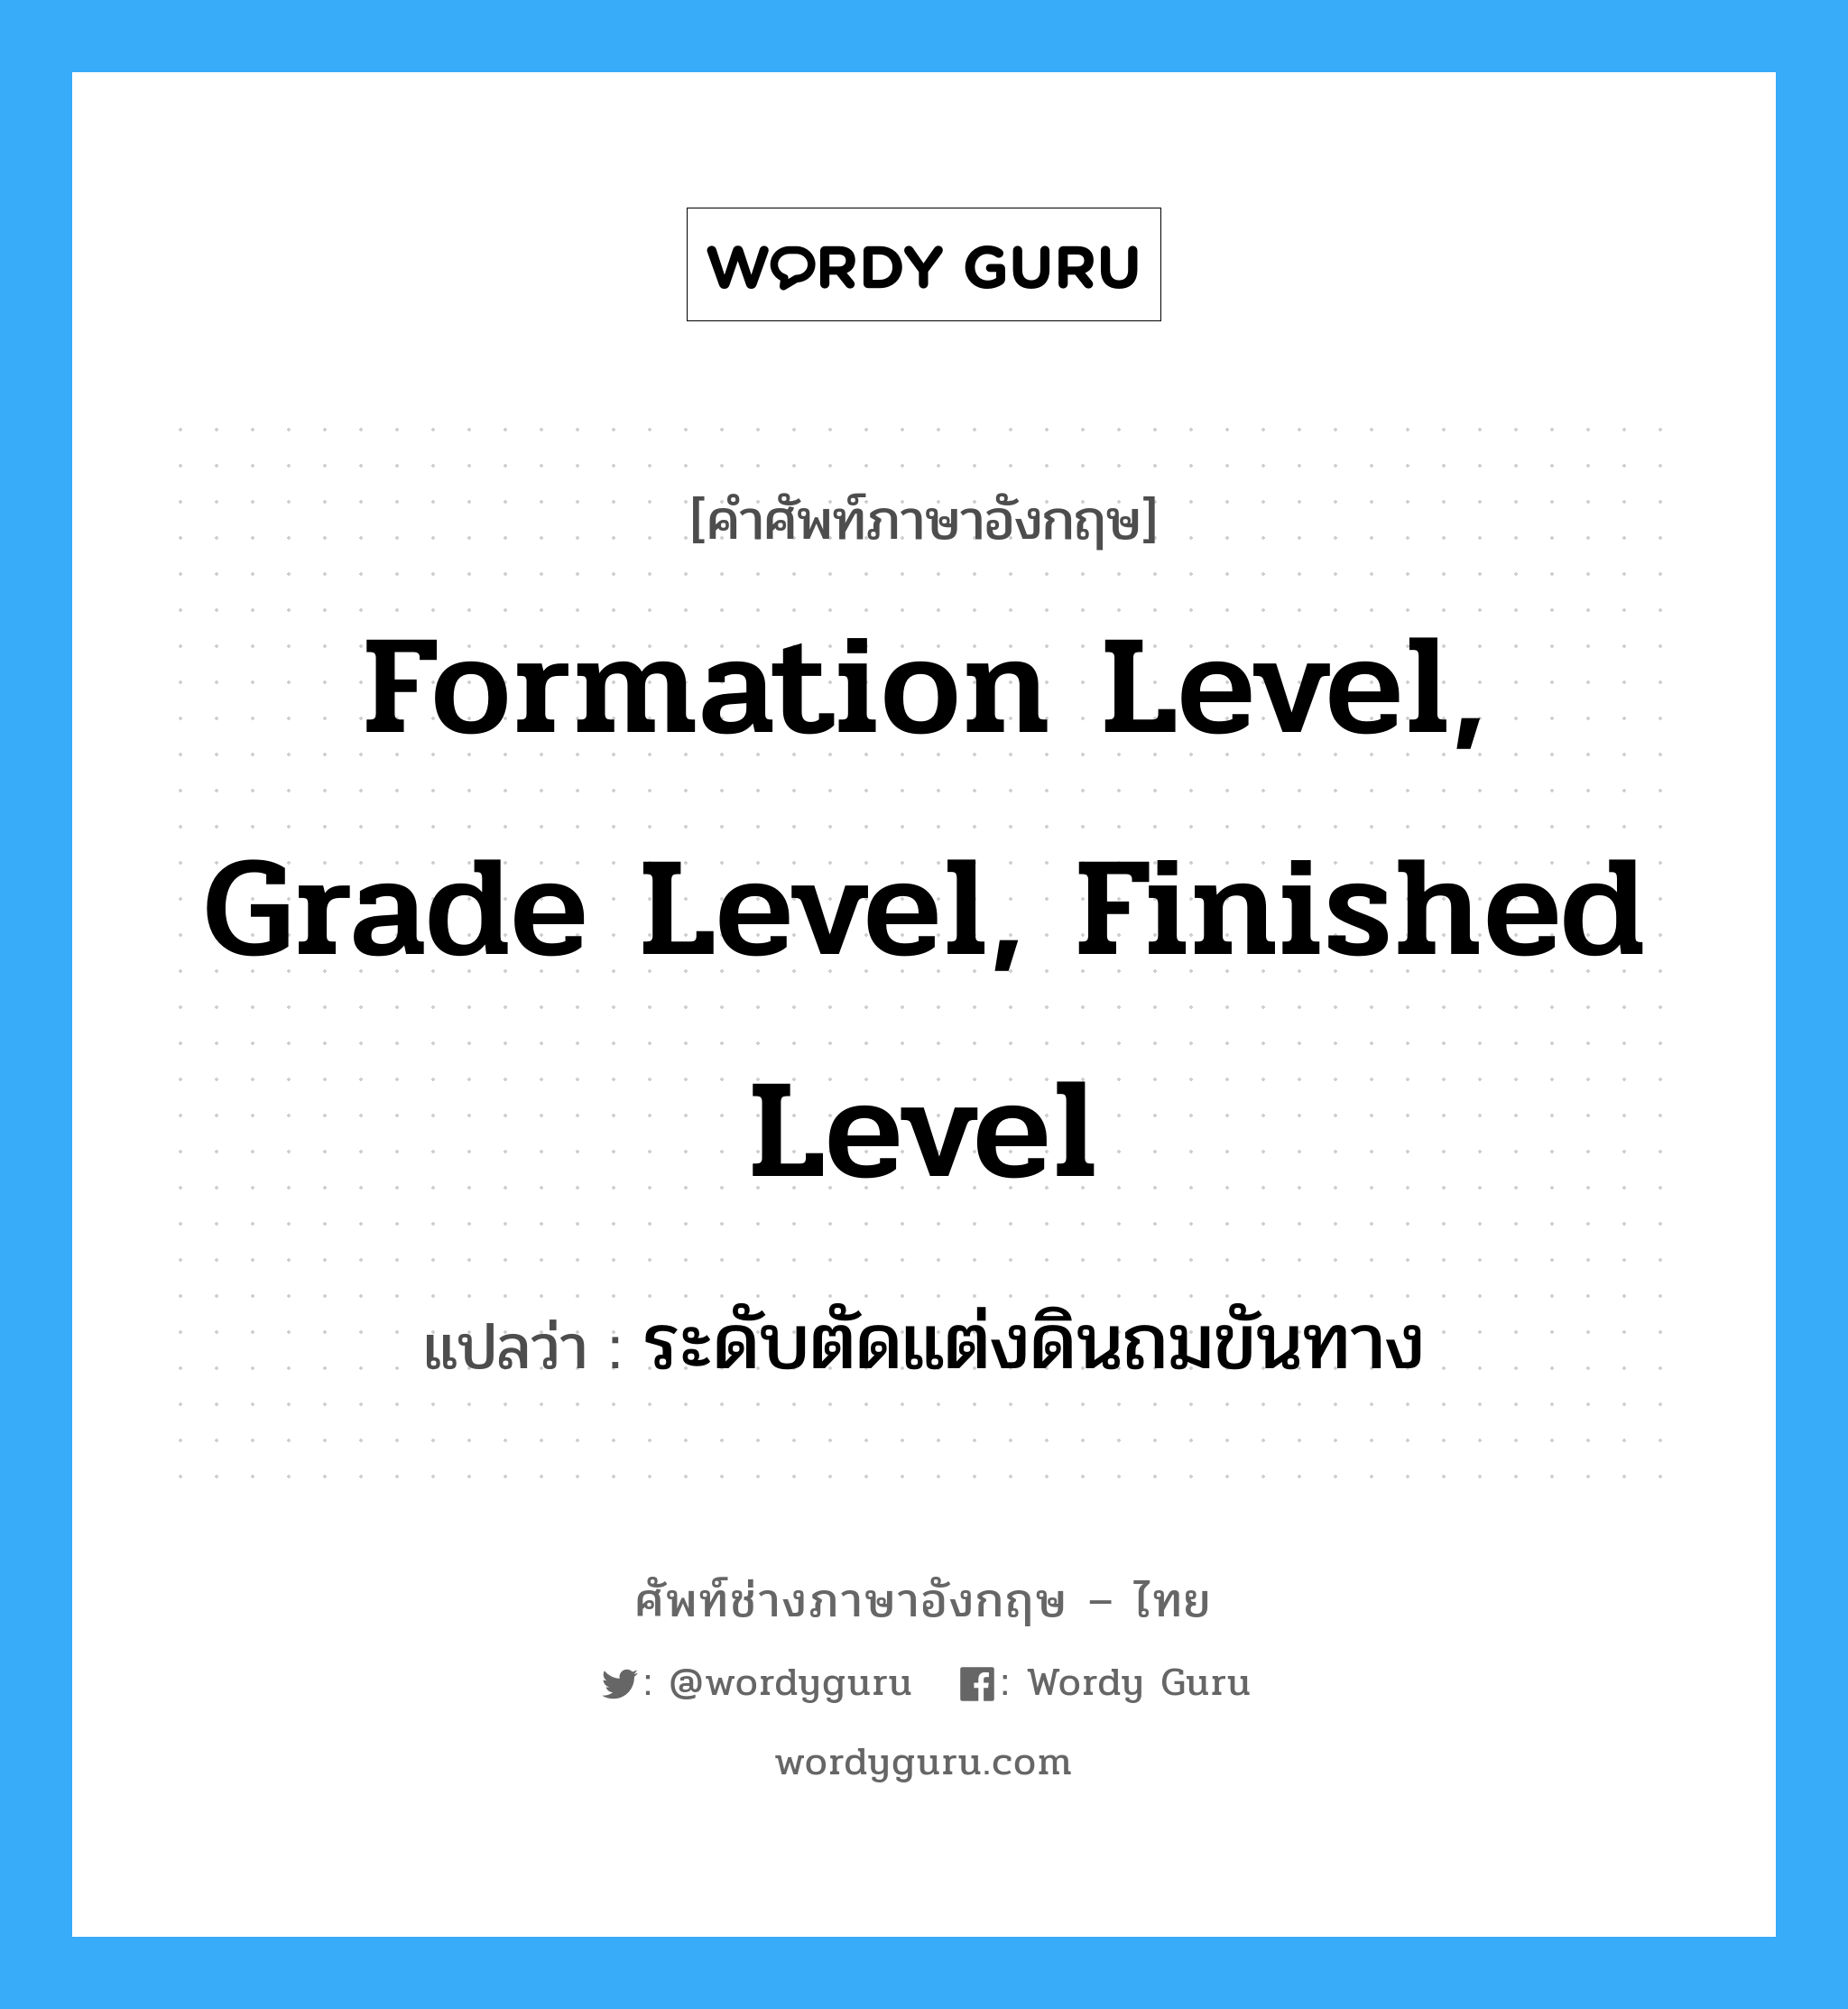 ระดับตัดแต่งดินถมขันทาง ภาษาอังกฤษ?, คำศัพท์ช่างภาษาอังกฤษ - ไทย ระดับตัดแต่งดินถมขันทาง คำศัพท์ภาษาอังกฤษ ระดับตัดแต่งดินถมขันทาง แปลว่า formation level, grade level, finished level